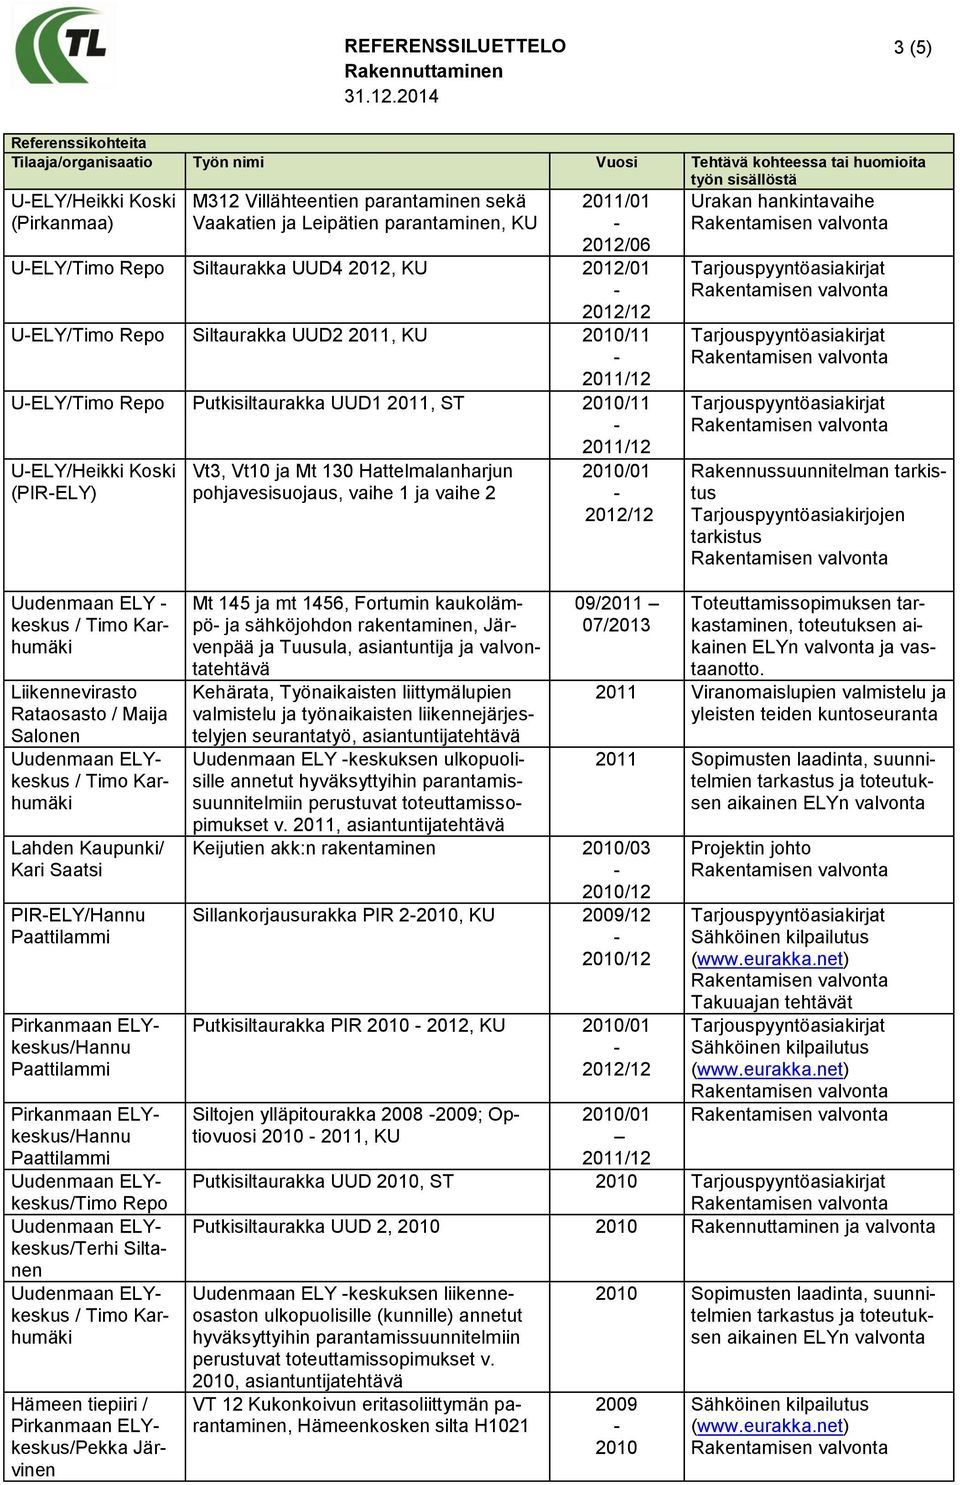 2010/11 UELY/Heikki Koski (PIRELY) Vt3, Vt10 ja Mt 130 Hattelmalanharjun pohjavesisuojaus, vaihe 1 ja vaihe 2 2010/01 Urakan hankintavaihe Rakennussuunnitelman tarkistus Tarjouspyyntöasiakirjojen